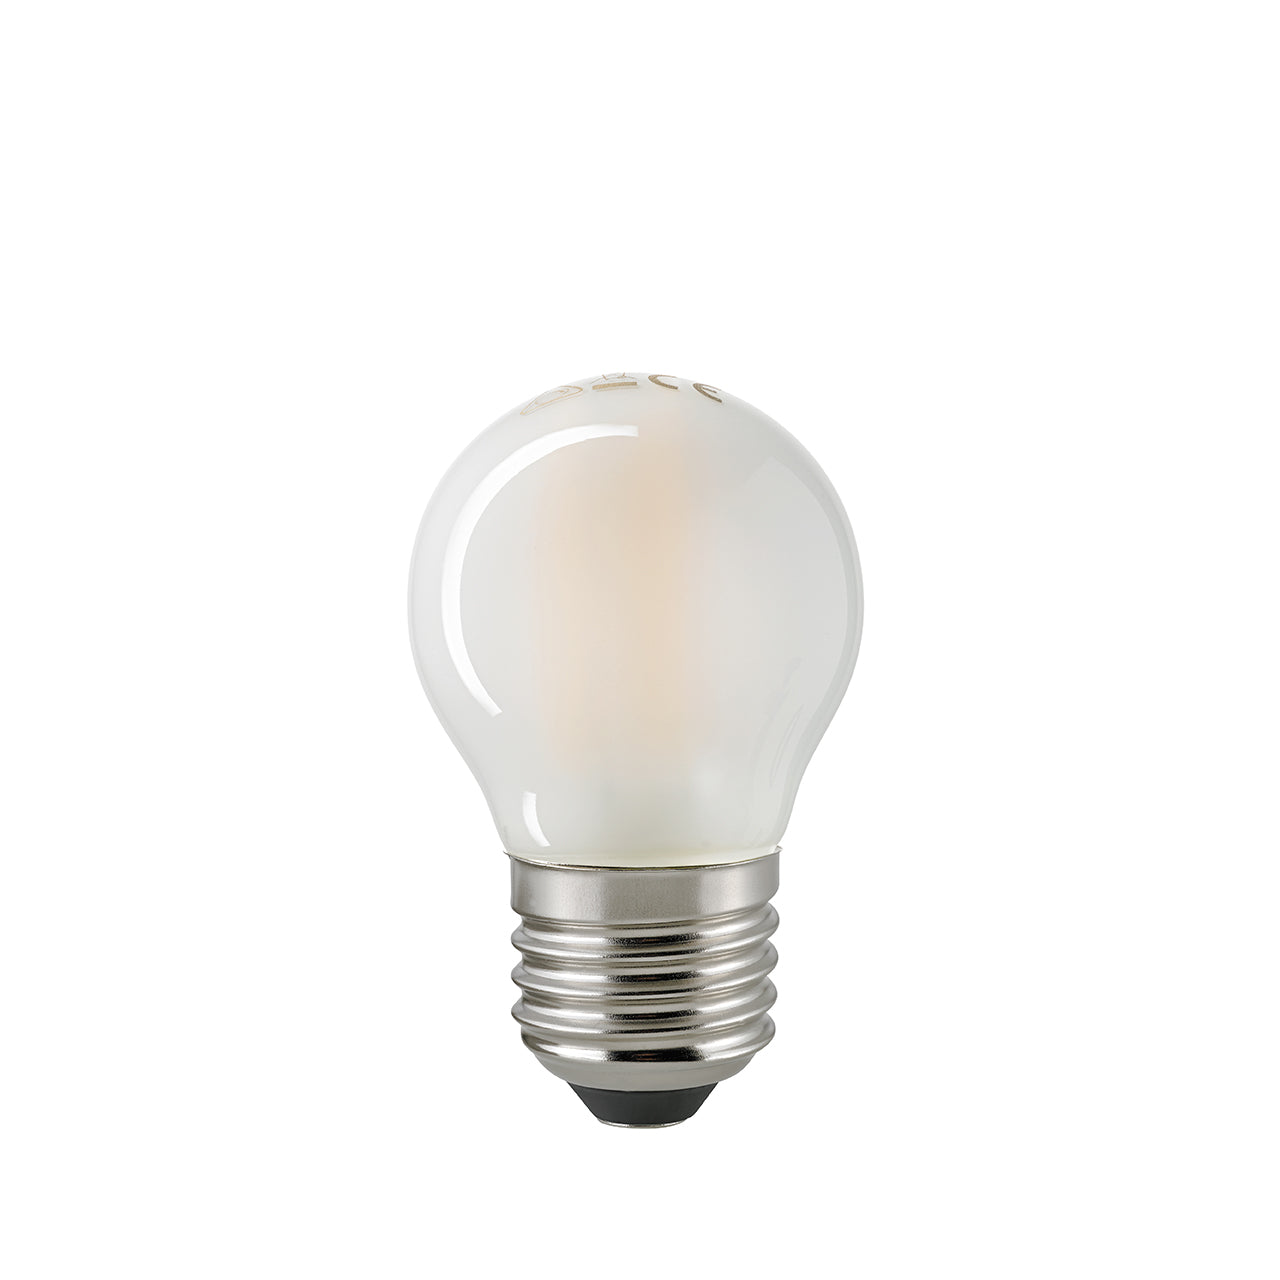 Light bulb E27 small 806 lm